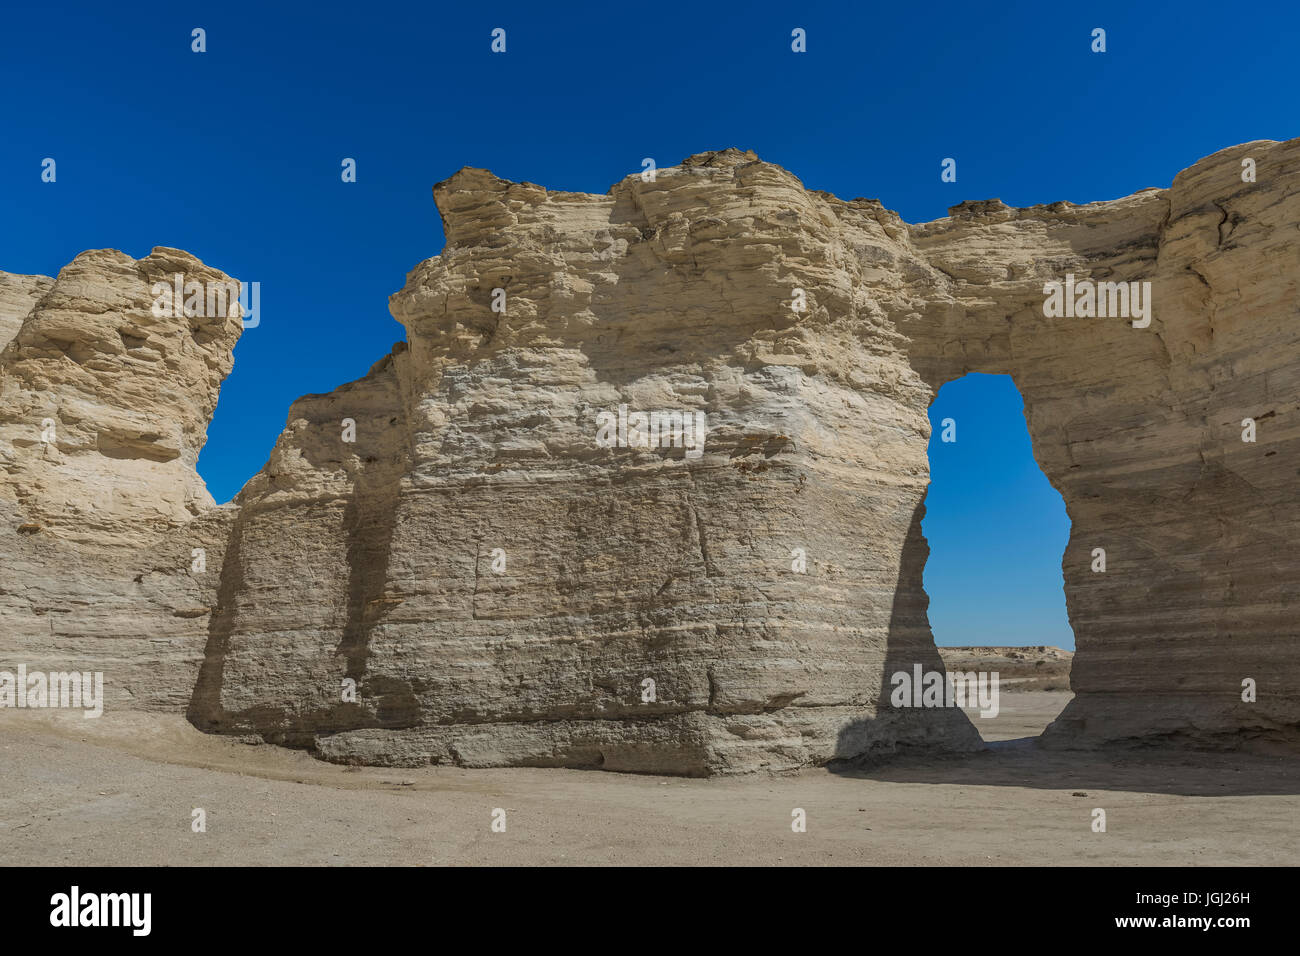 Das Auge der Nadel Bildung bei Monument Rocks, aka Kreide Pyramiden, die erste nationale Natursehenswürdigkeit in den Vereinigten Staaten, und diejenige priva Stockfoto